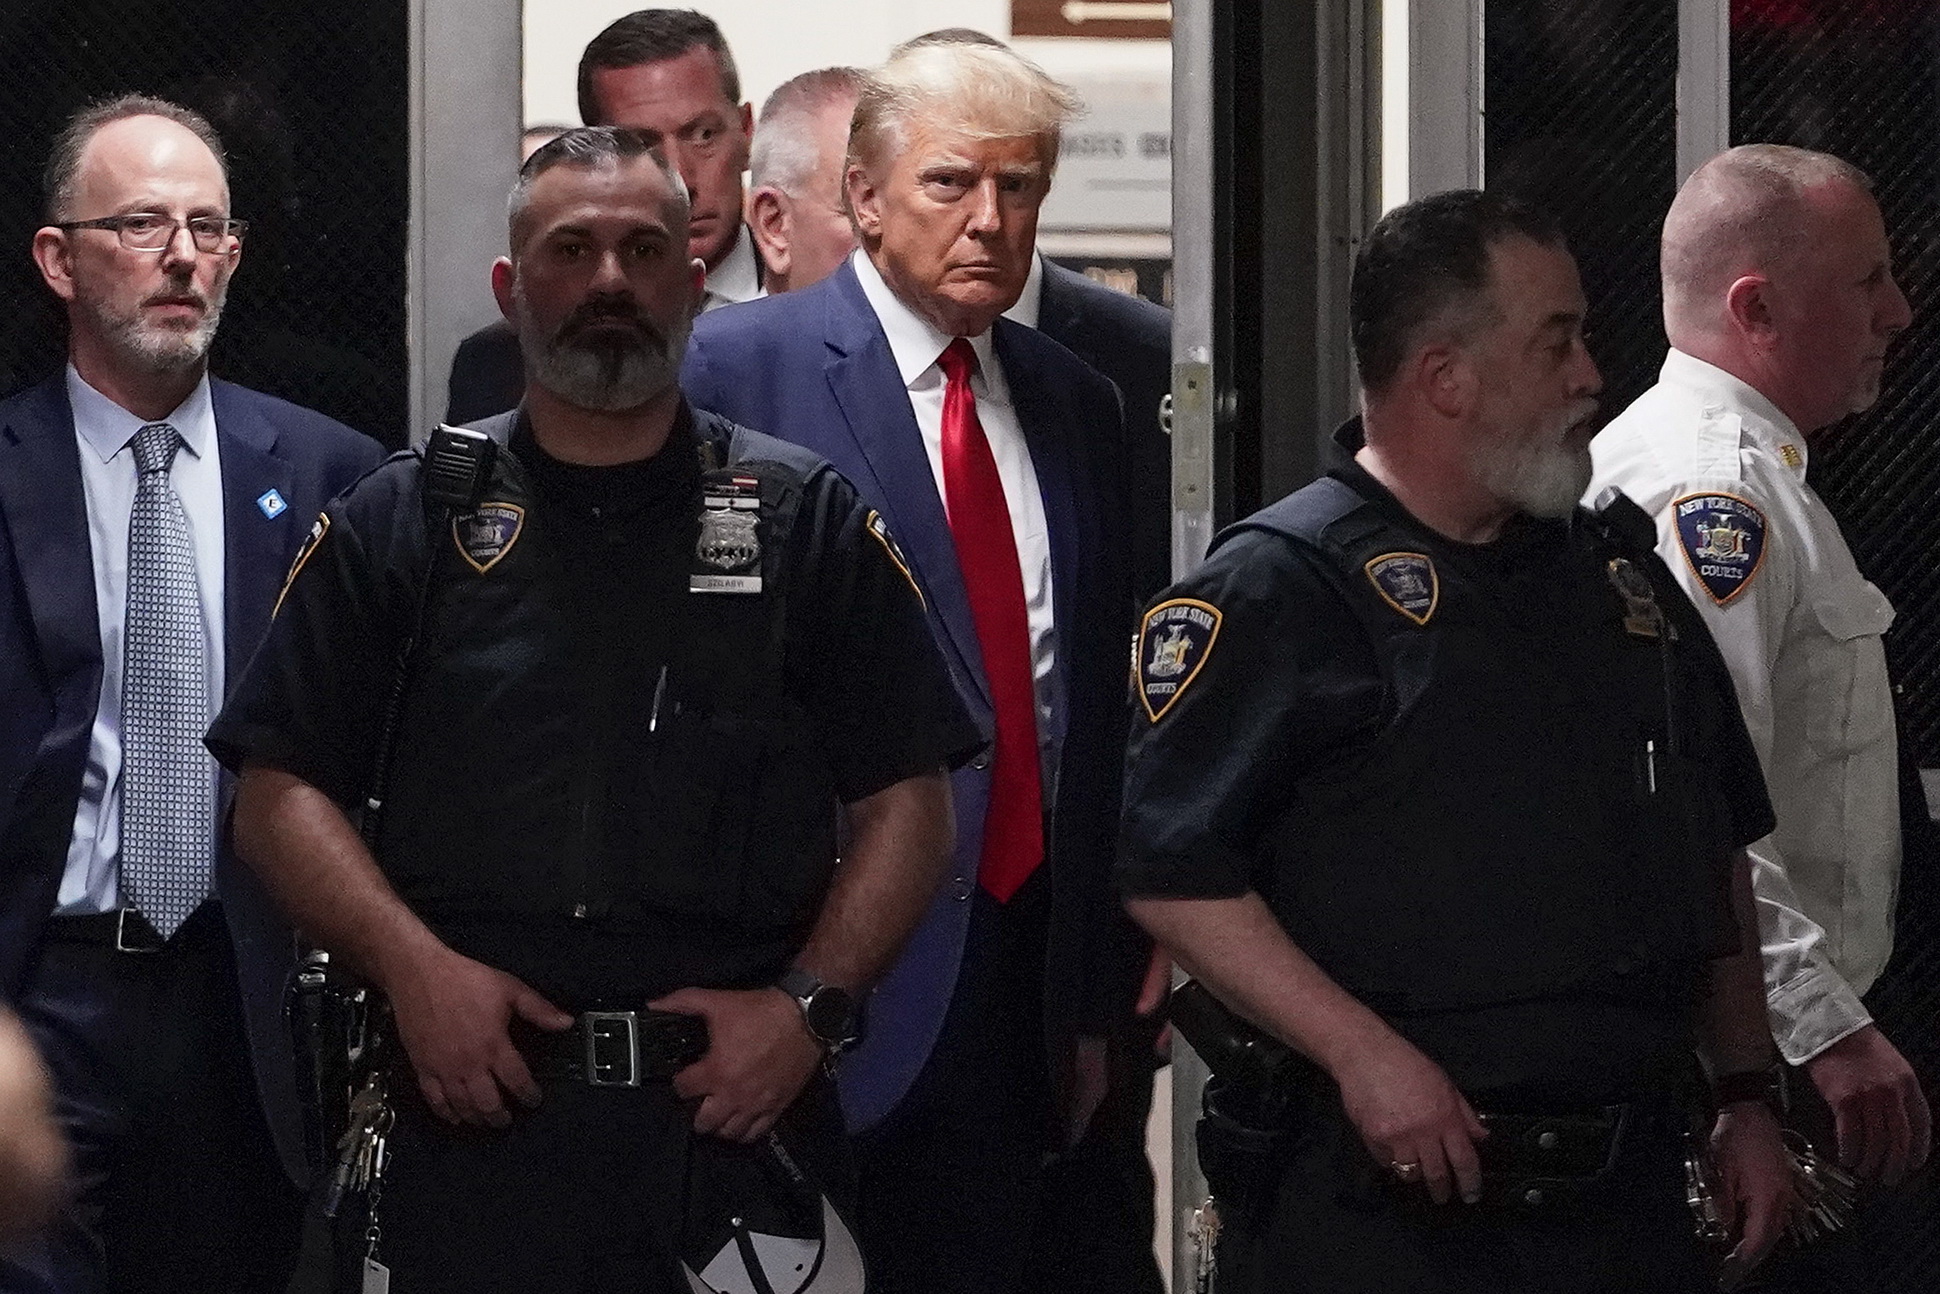 الرئيس الأميركي السابق دونالد ترمب يدخل قاعة المحكمة مع مرافقيه في نيويورك بتاريخ 04 إبريل 2023 